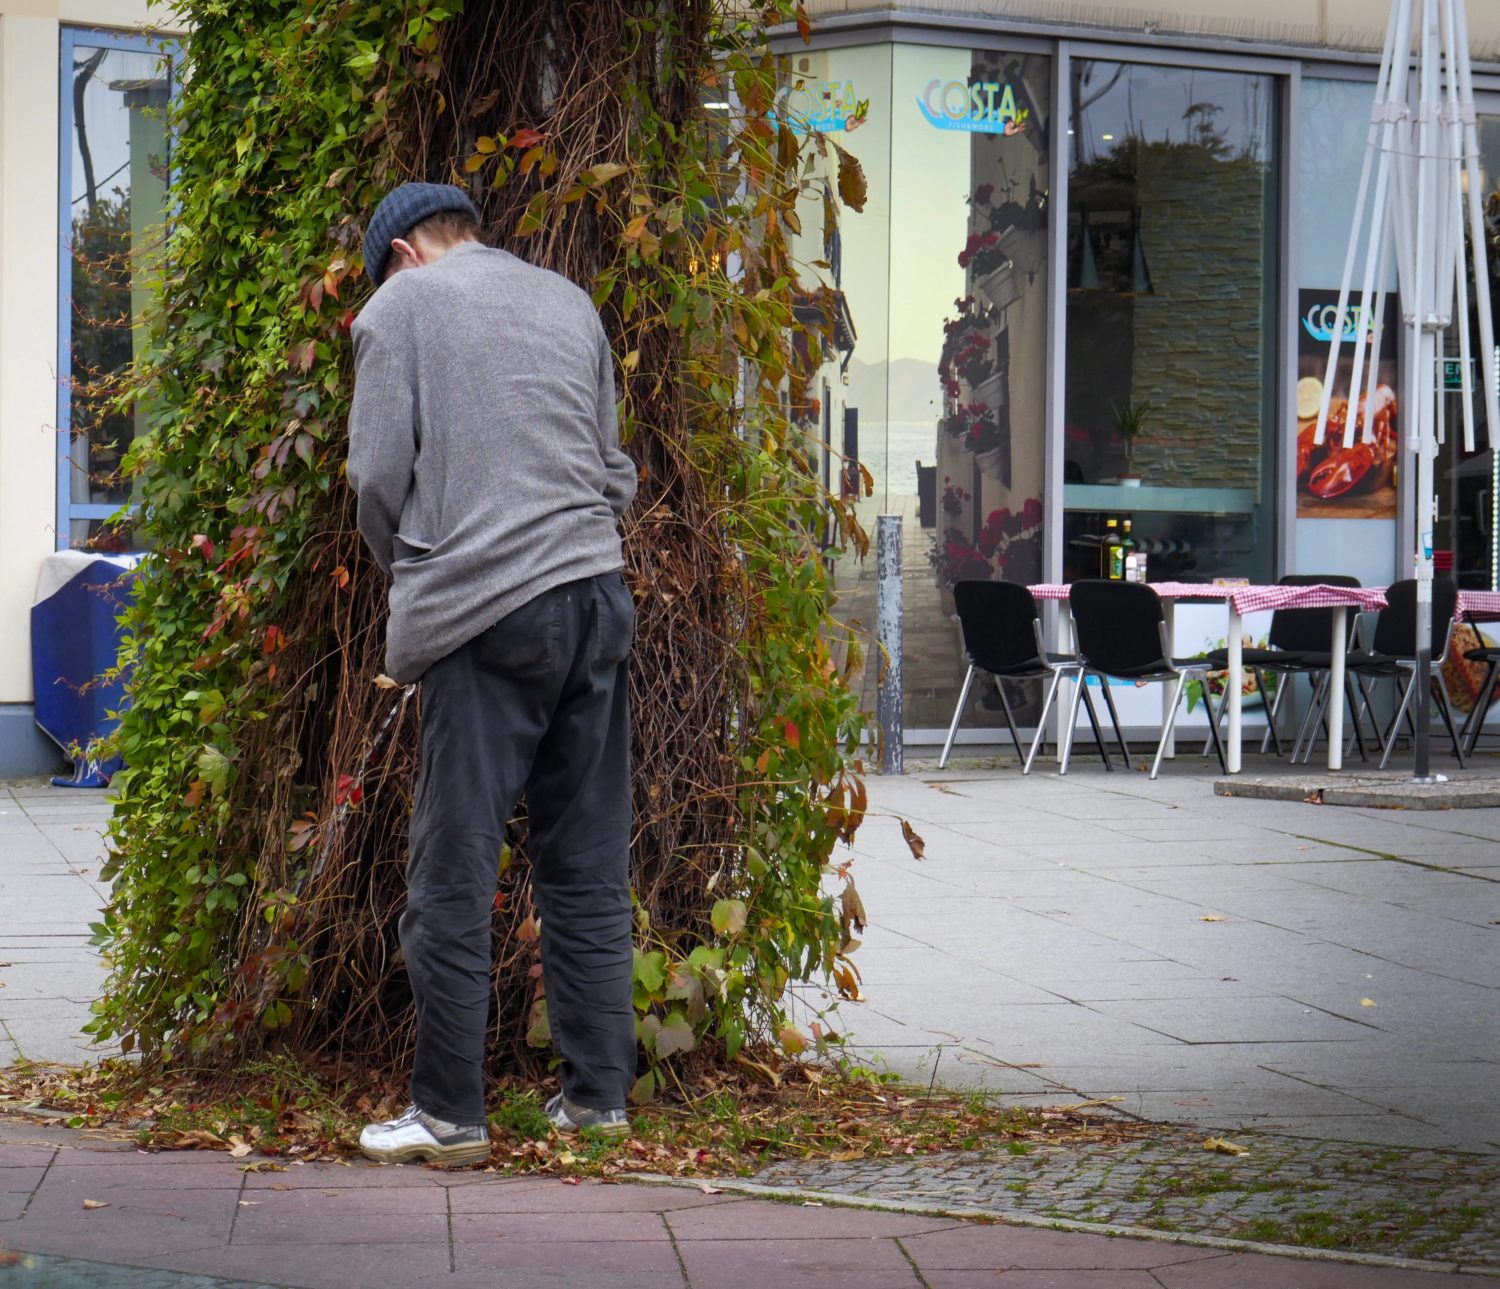 Wildpinkeln in der Stadt: Für die meisten Männer das normalste der Welt. Foto: Imago Images/Jürgen Ritter